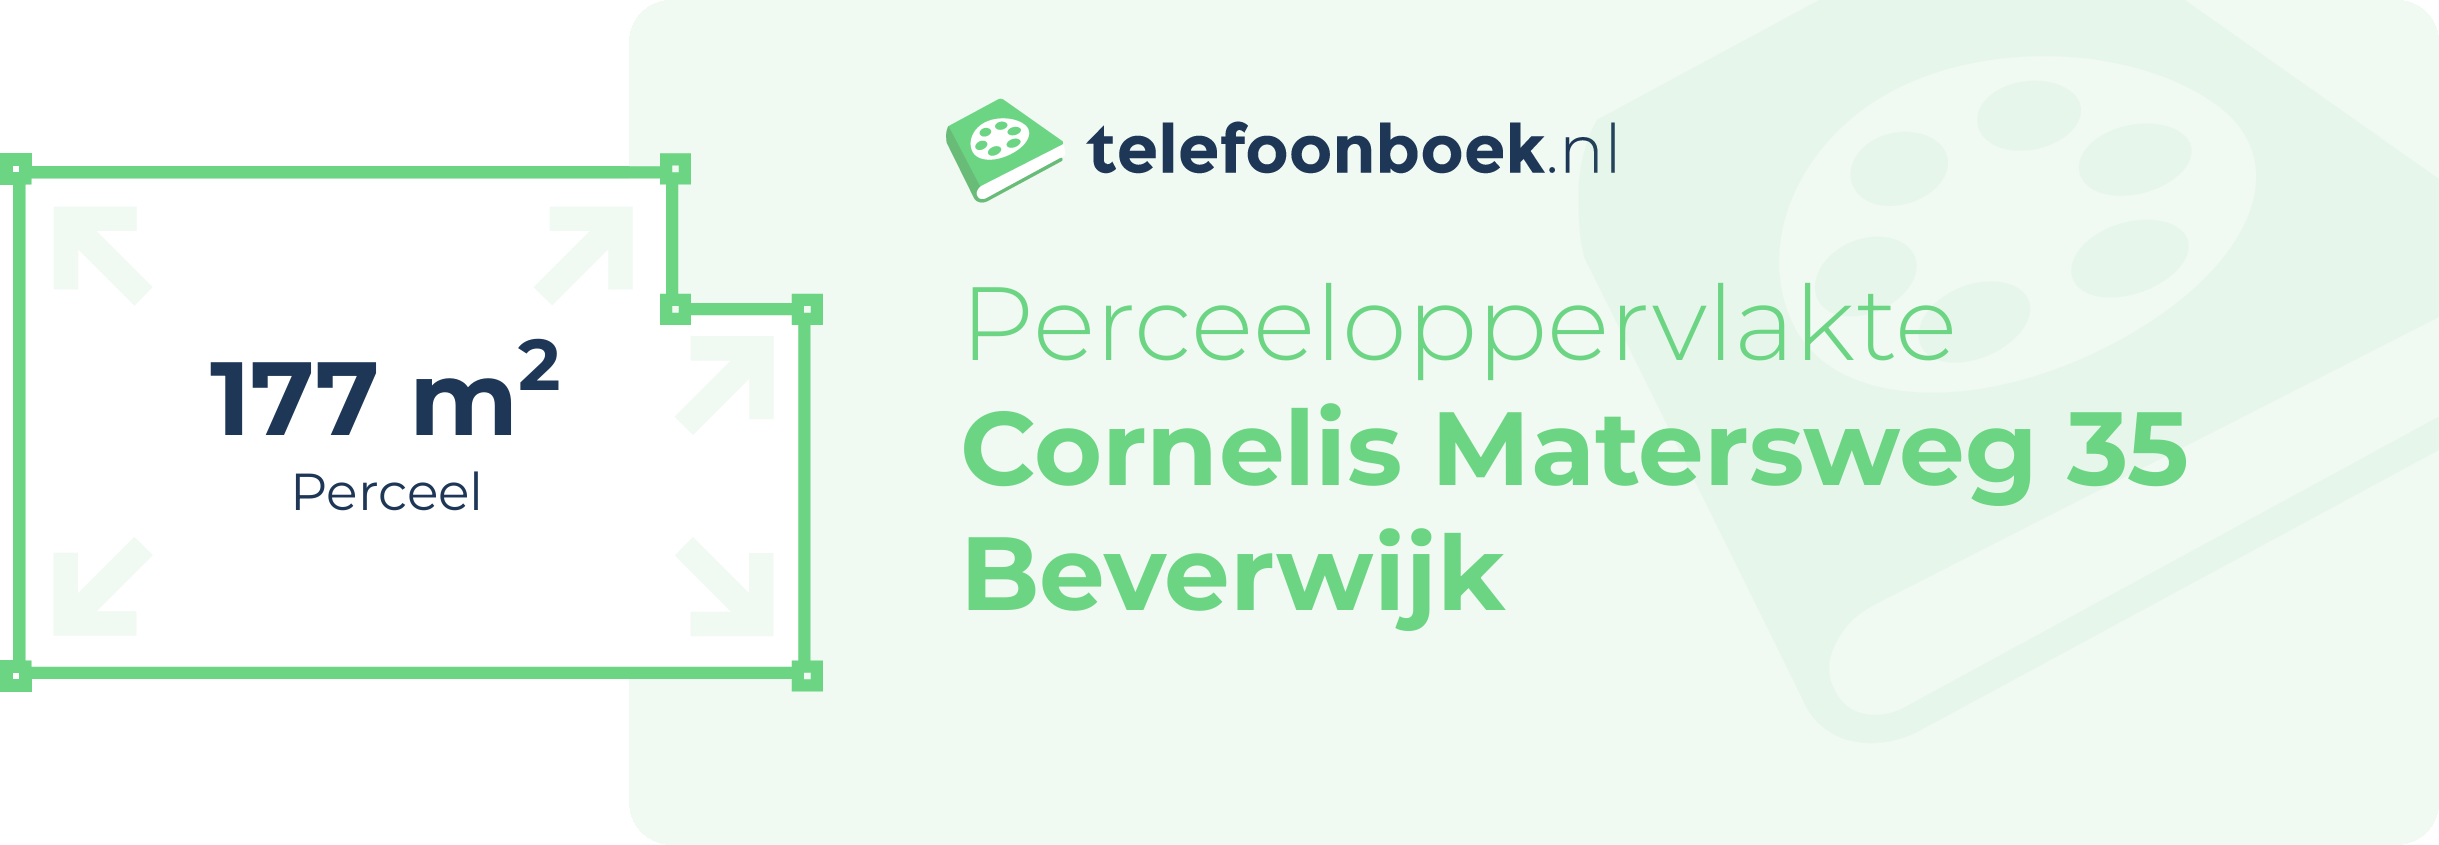 Perceeloppervlakte Cornelis Matersweg 35 Beverwijk